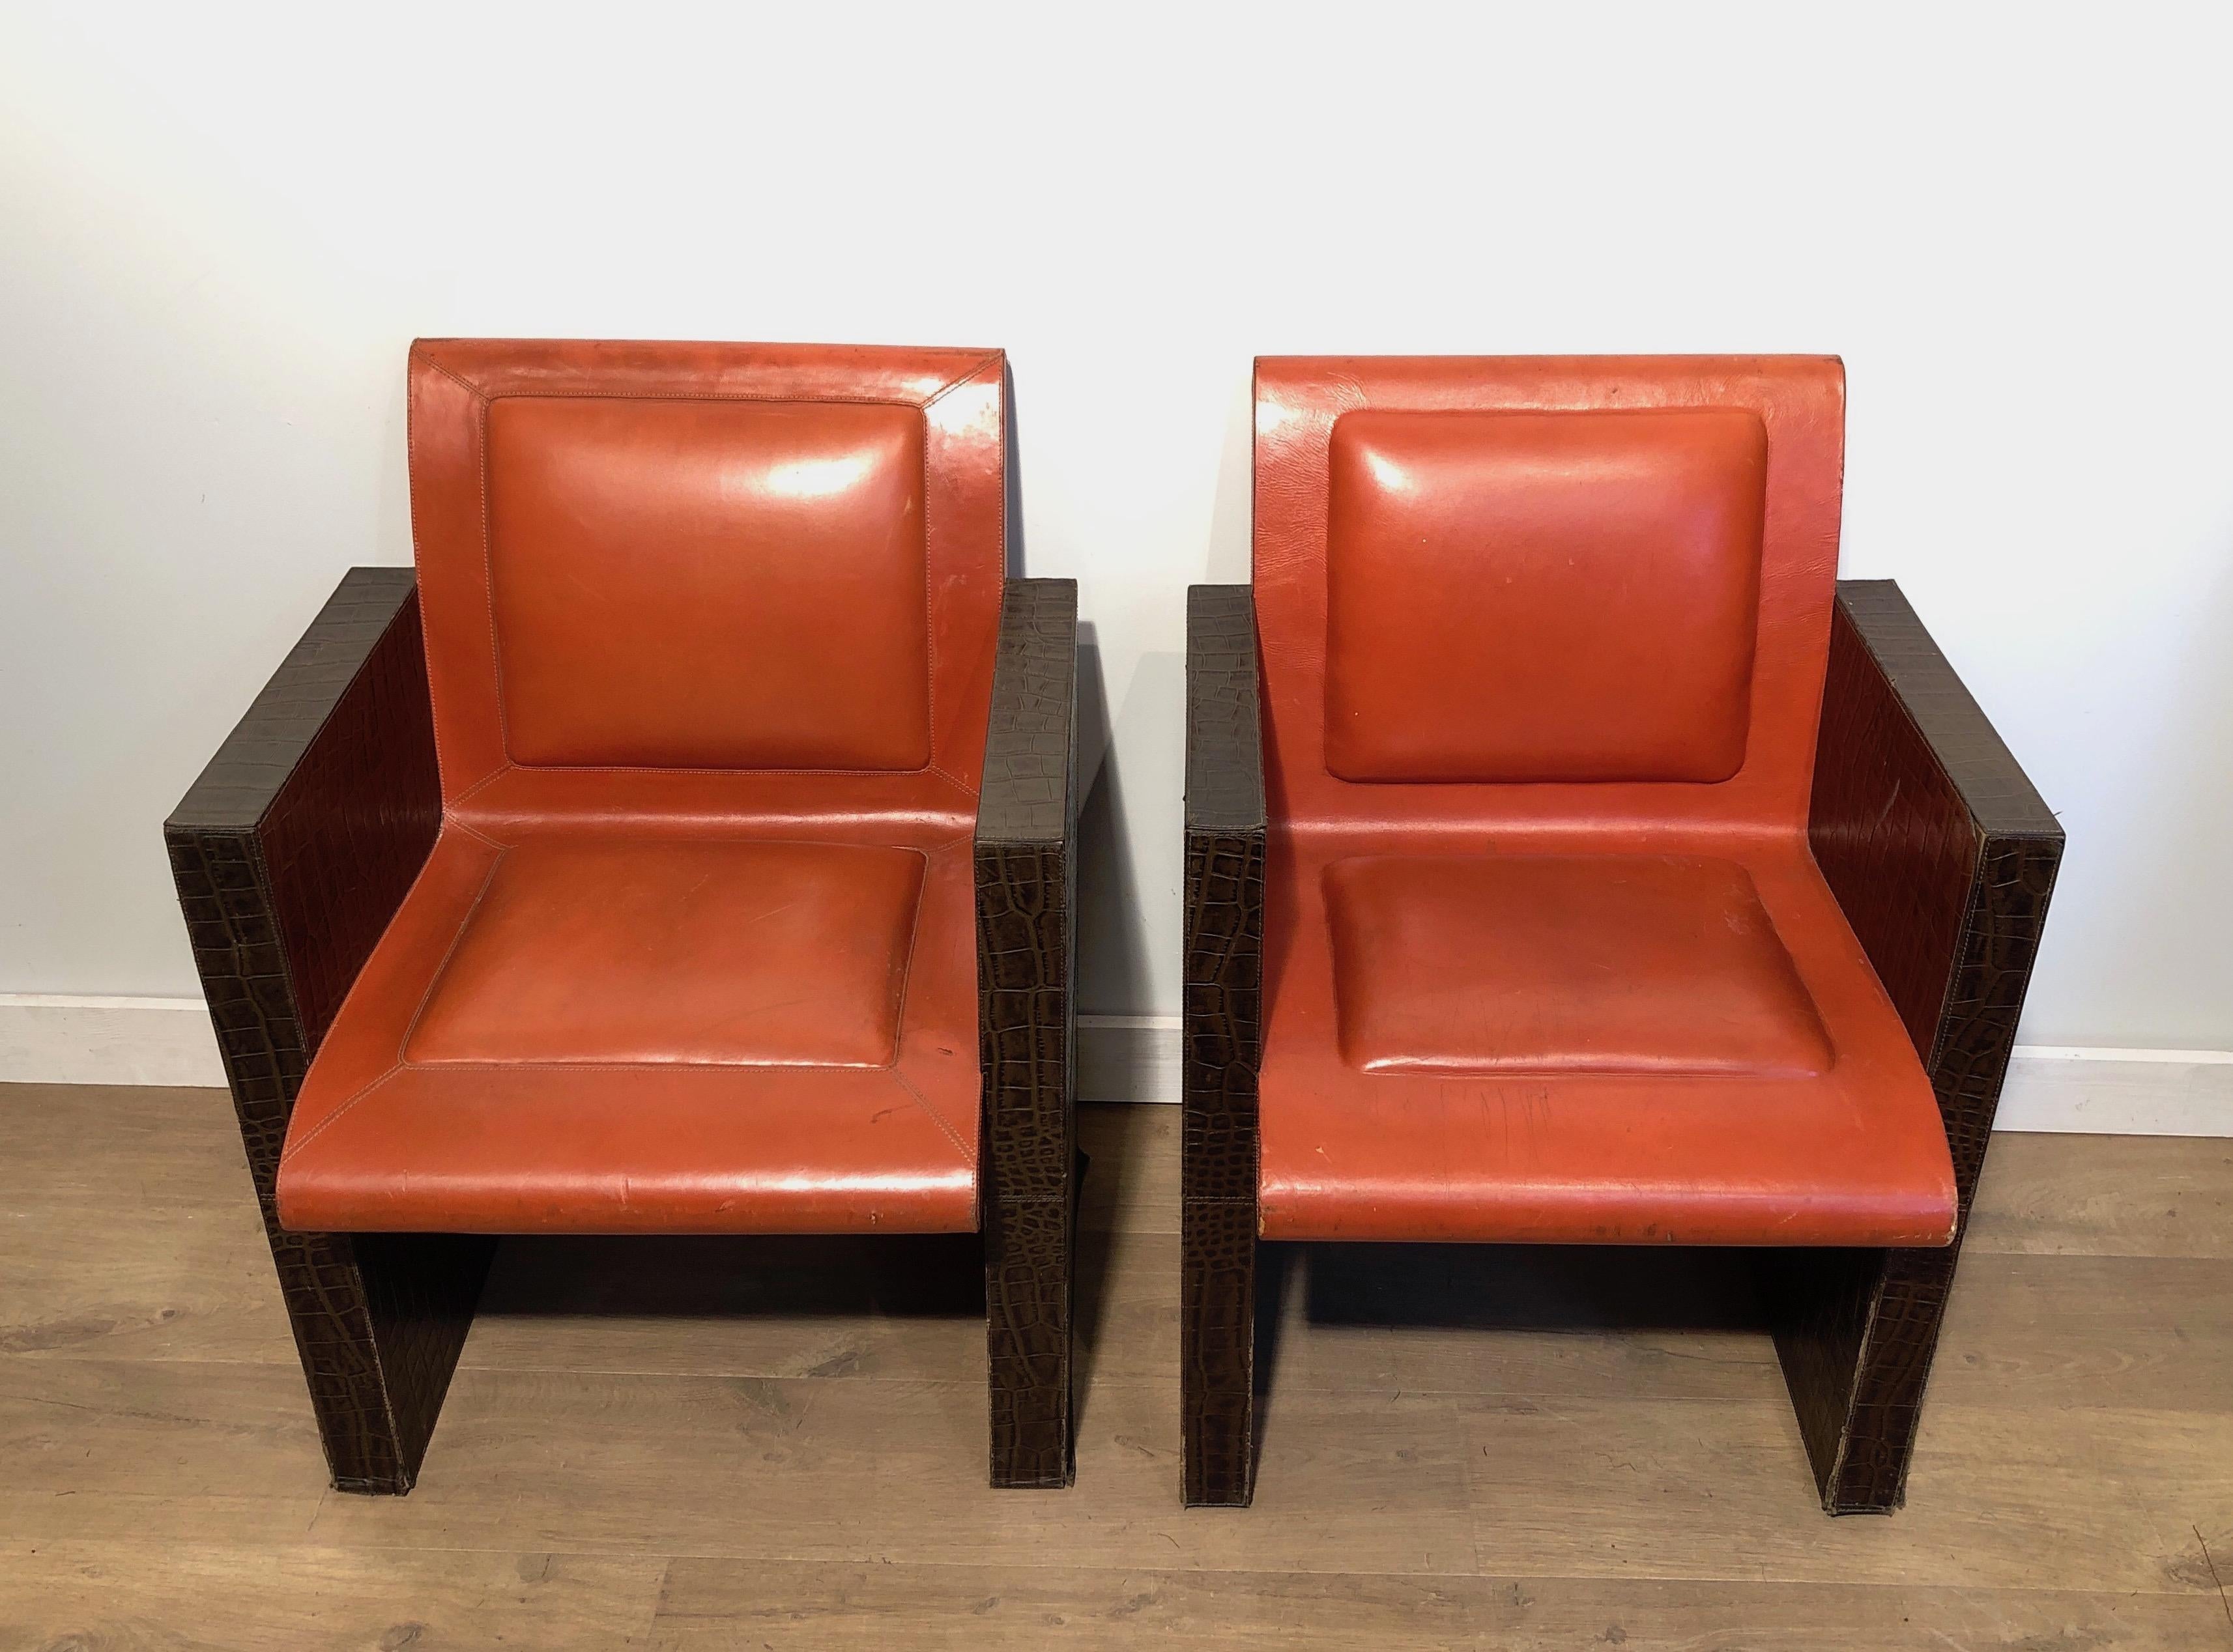 Dieses sehr ungewöhnliche Sesselpaar ist aus einem orangefarbenen und braunen Leder gefertigt. Die Sessel können auch einzeln verkauft werden, wir haben 3 Stück zur Verfügung. Dies ist ein französisches Werk. CIRCA 1970